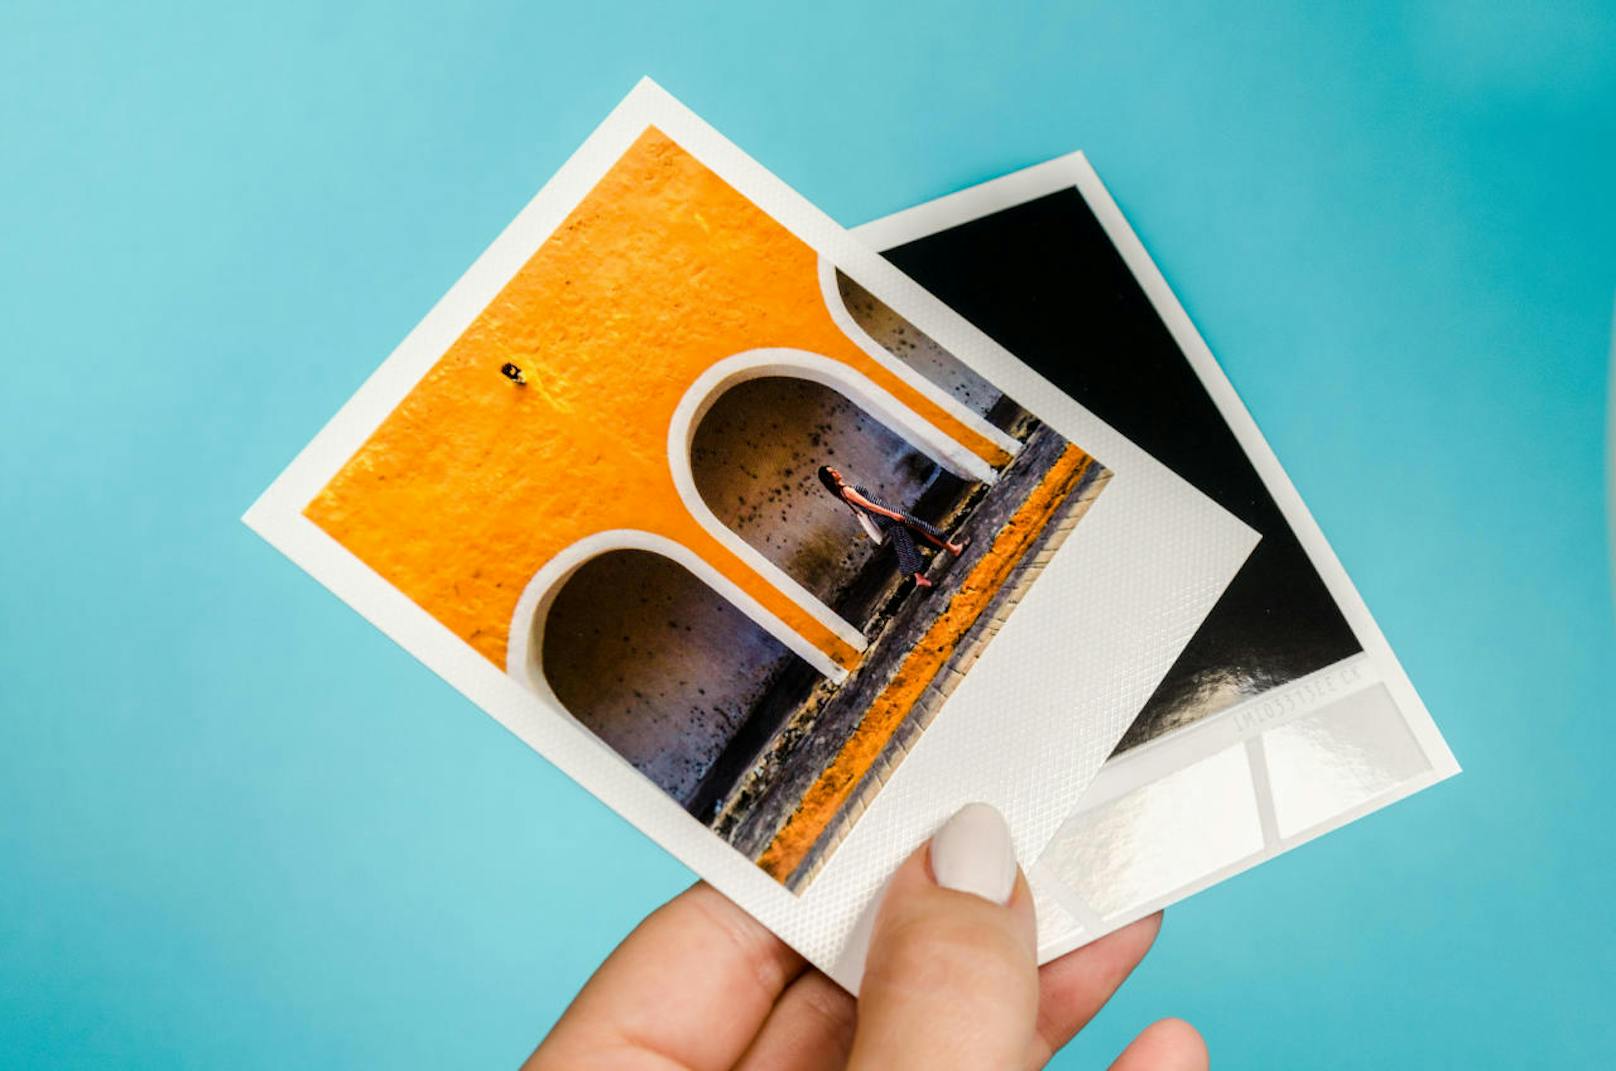 Aktuell rockt auch ein neues Produkt von Journi: die Entwickler haben sich mit Polaroid zusammengetan, um ein neues Produkt zu entwickeln. Anwender können ihr Handy einfach zur Polaroid Camera machen.